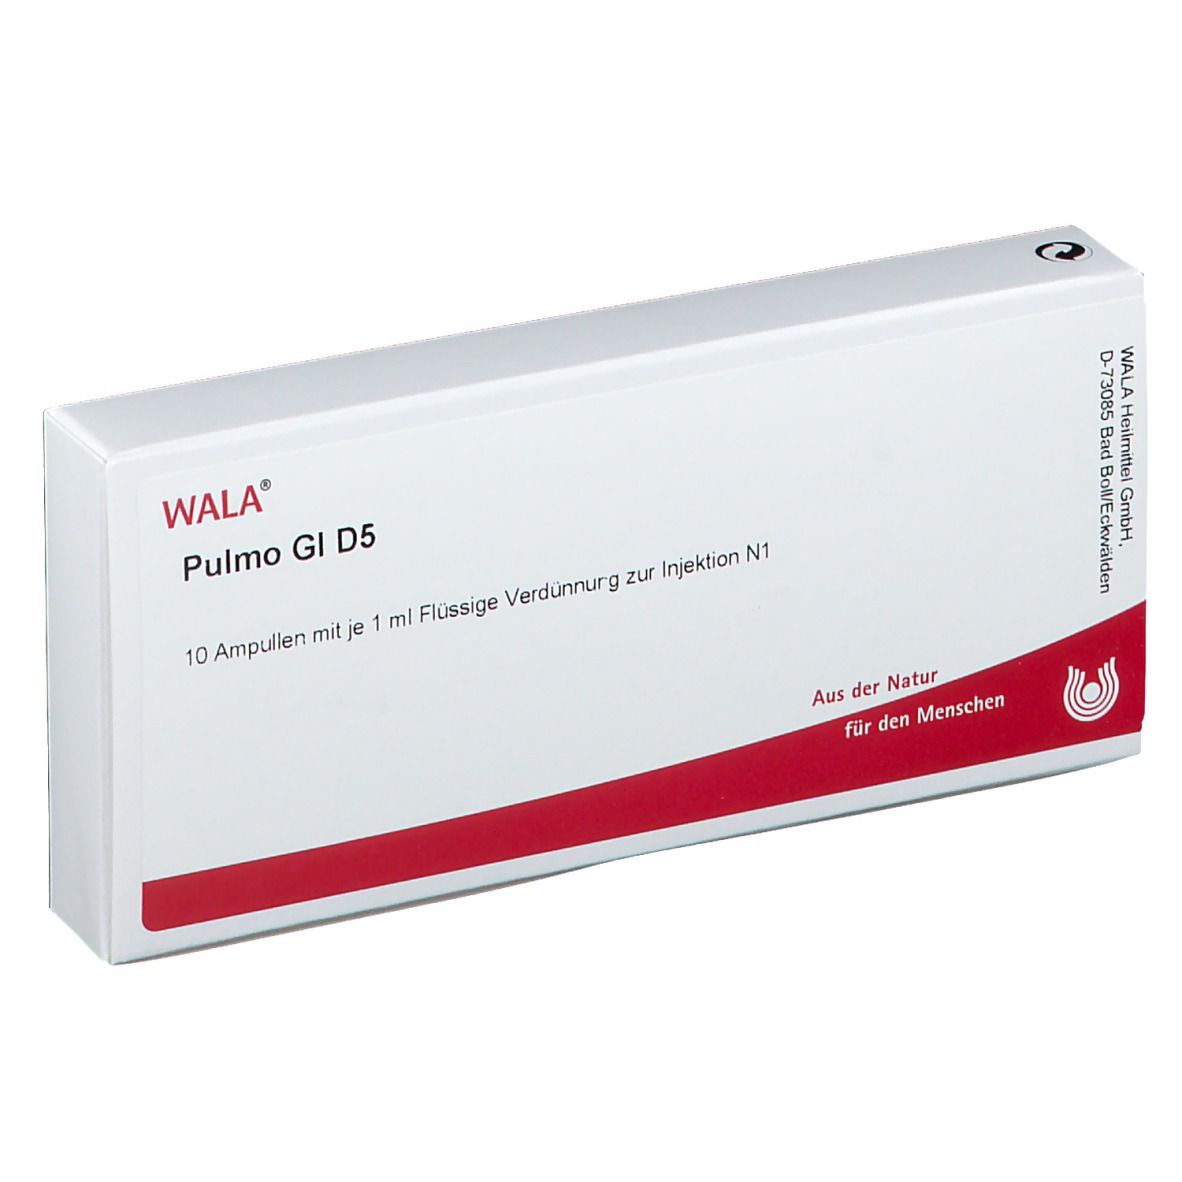 WALA® Pulmo Gl D 5